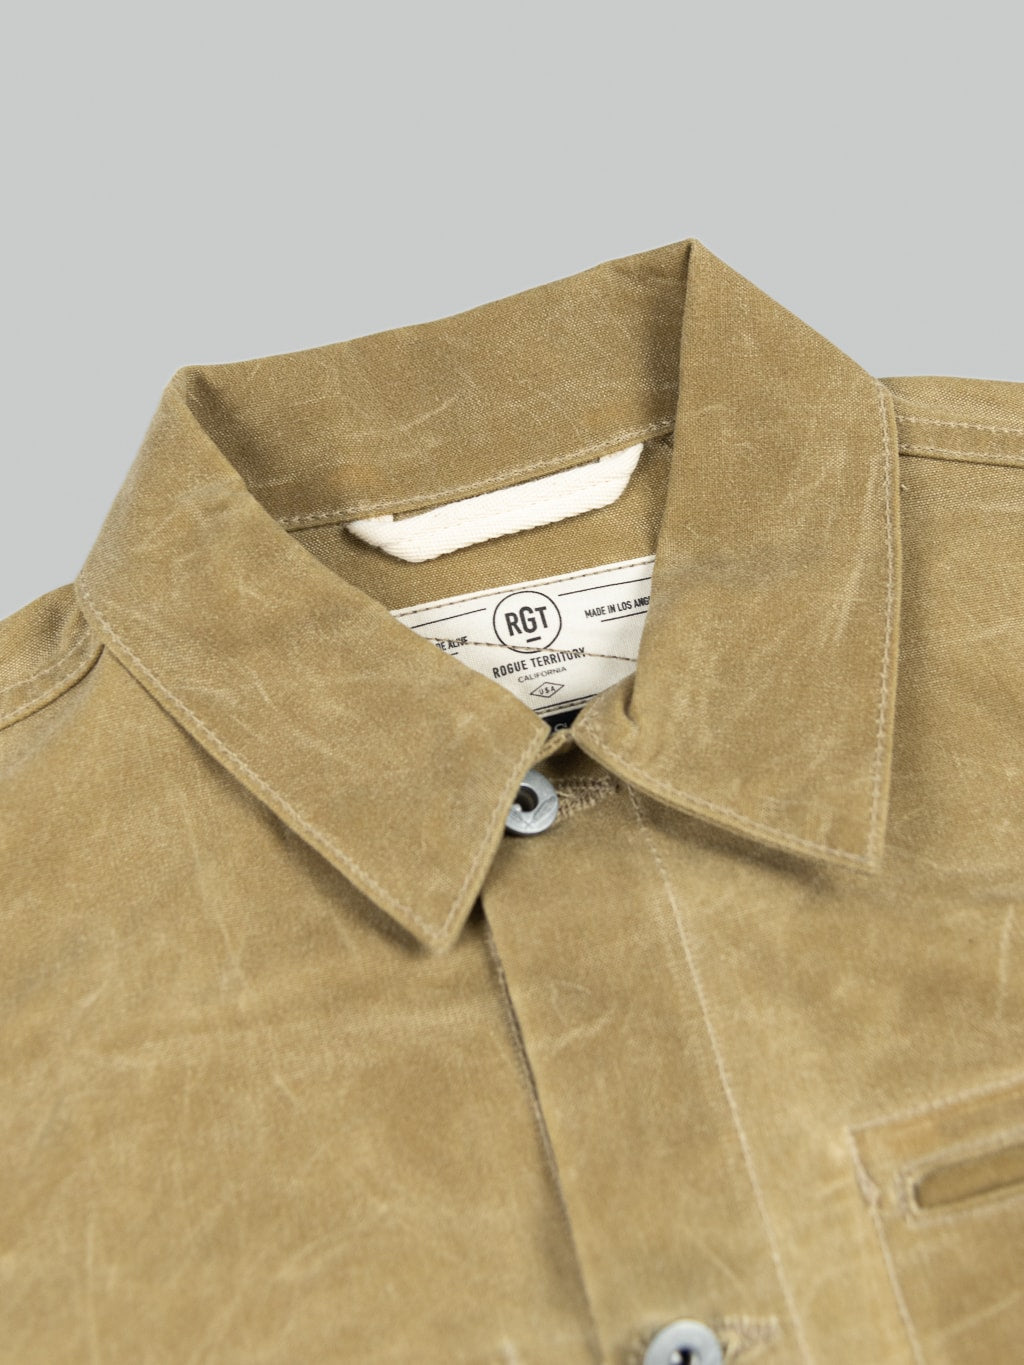 Rogue Territory Waxed Canvas Supply Jacket Tan Ridgeline collar